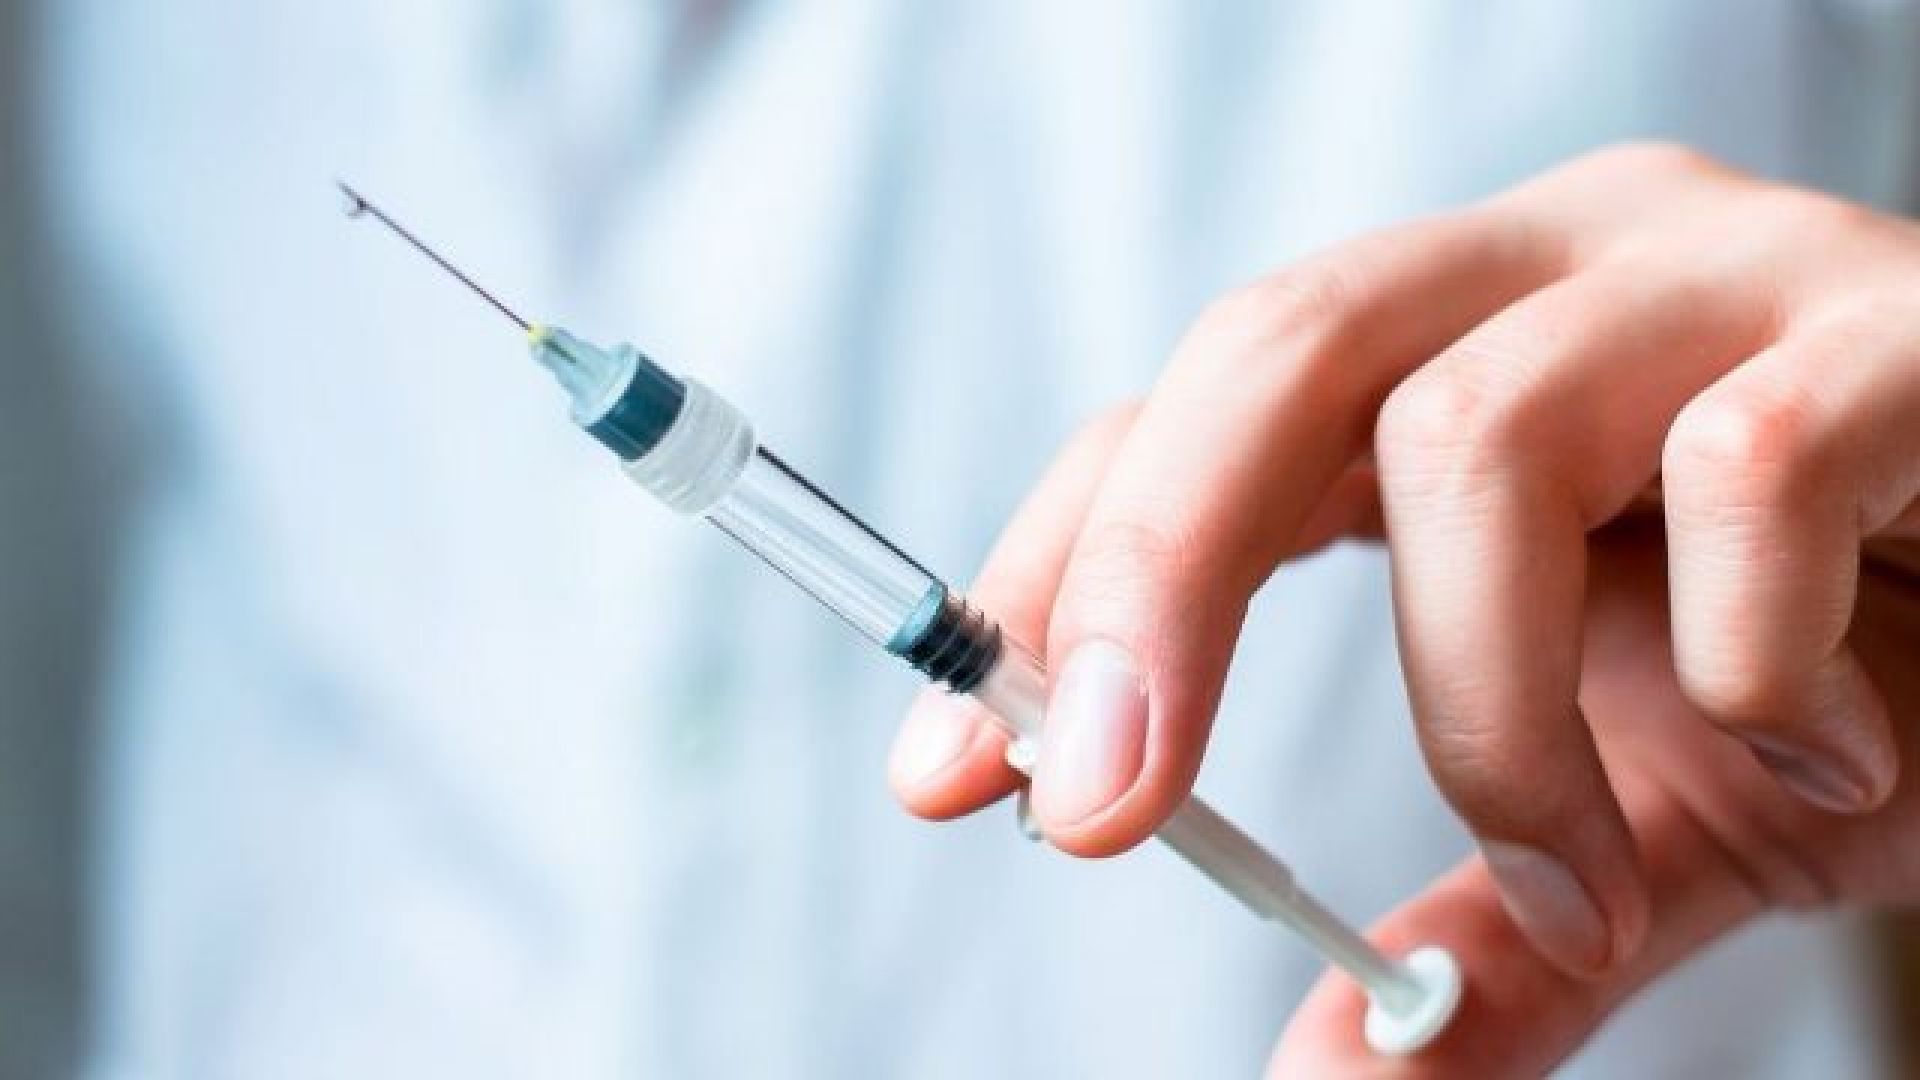 Θετικά σημάδια για το πρώτο εμβόλιο κατά των χλαμυδίων